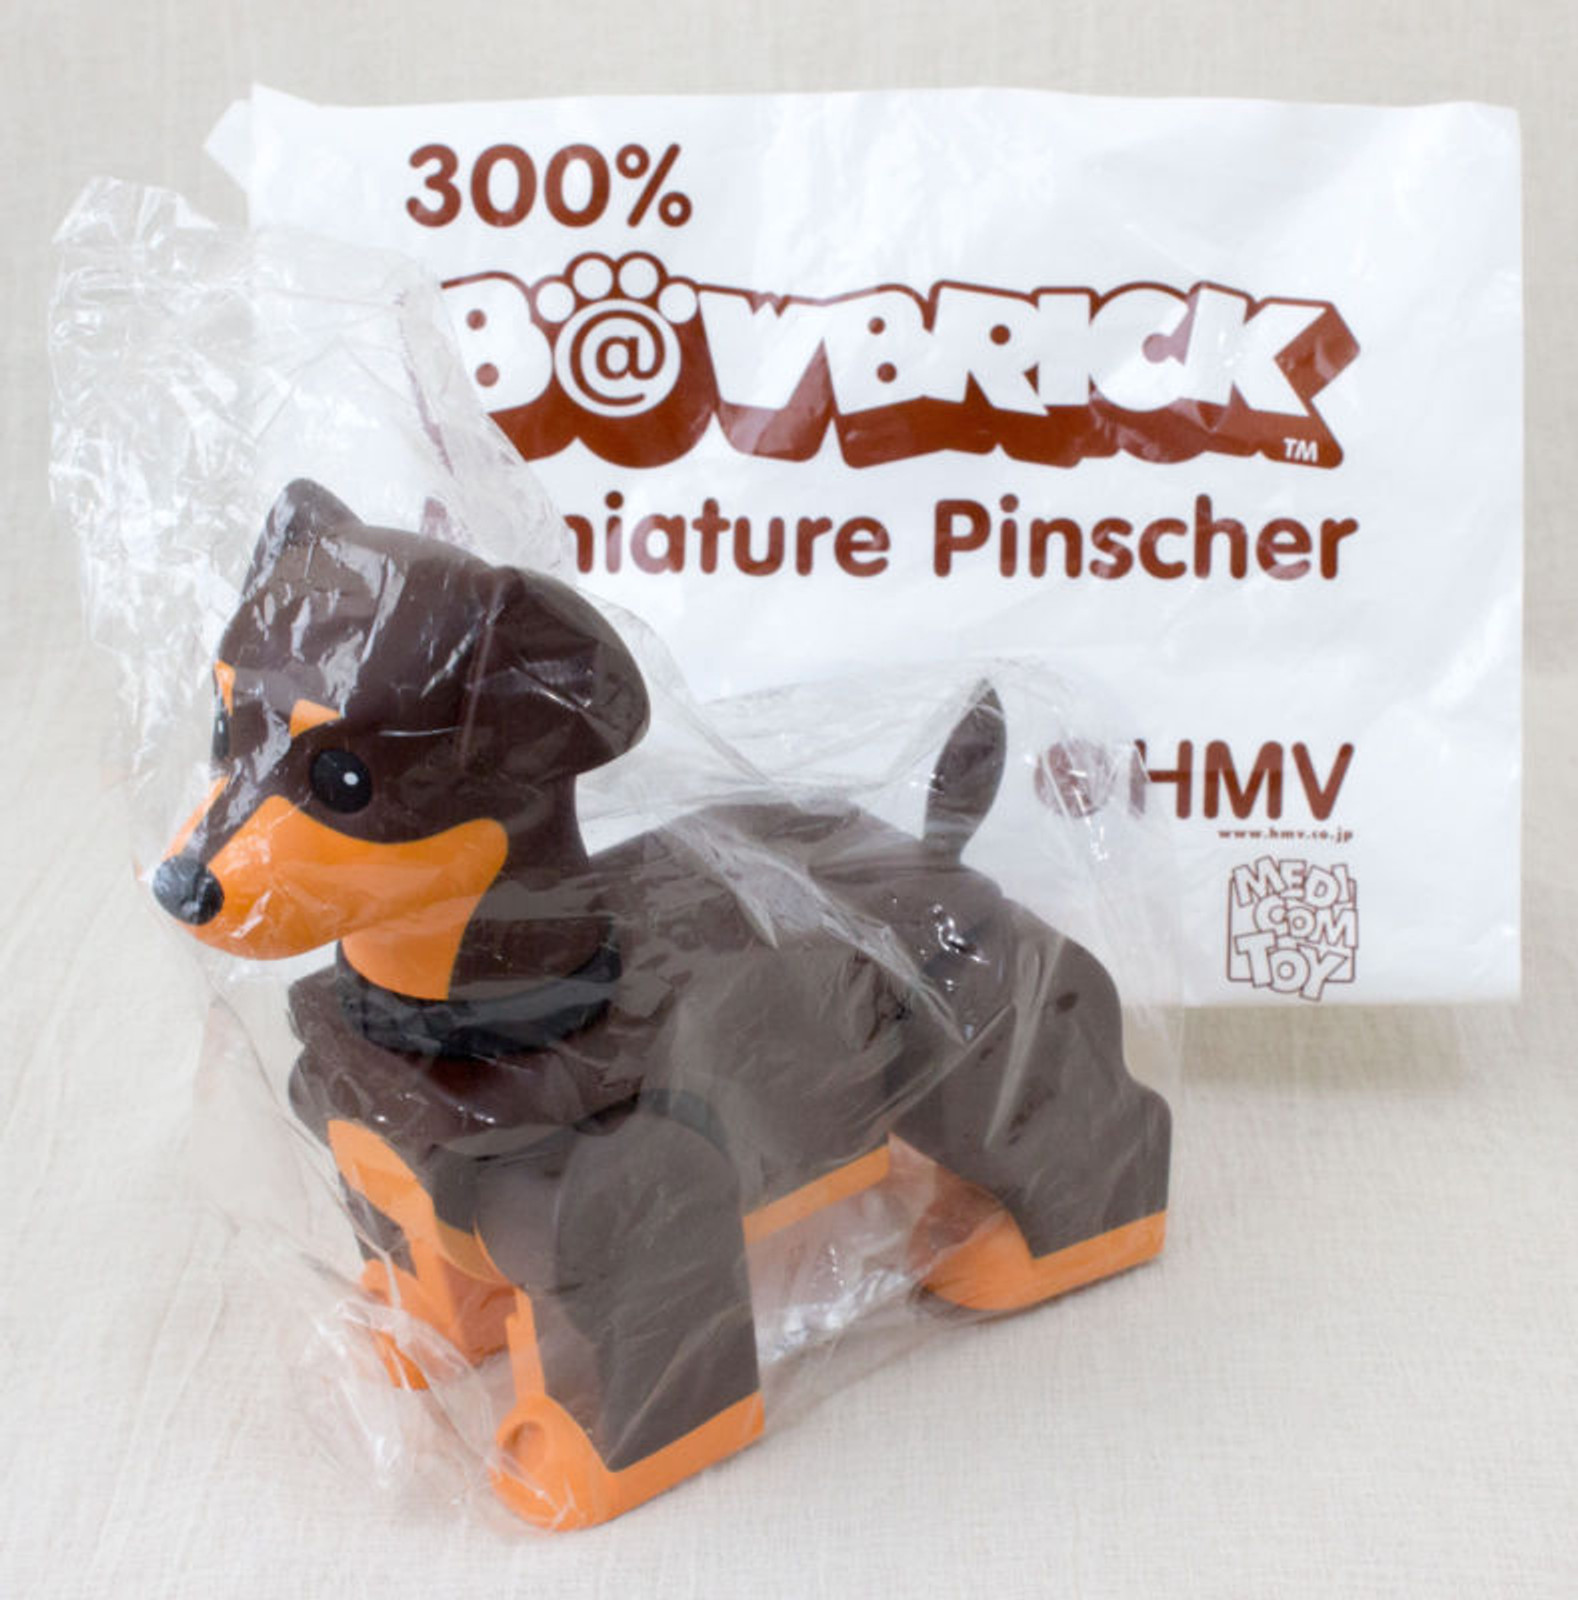 【特価在庫あ】HMV B@W001-0001HMV 300% B@WBRICK バウブリック ミニチュアピンシャー ミニピン ペット 犬 ドッグ フィギュア Miniature Pinscher 生き物